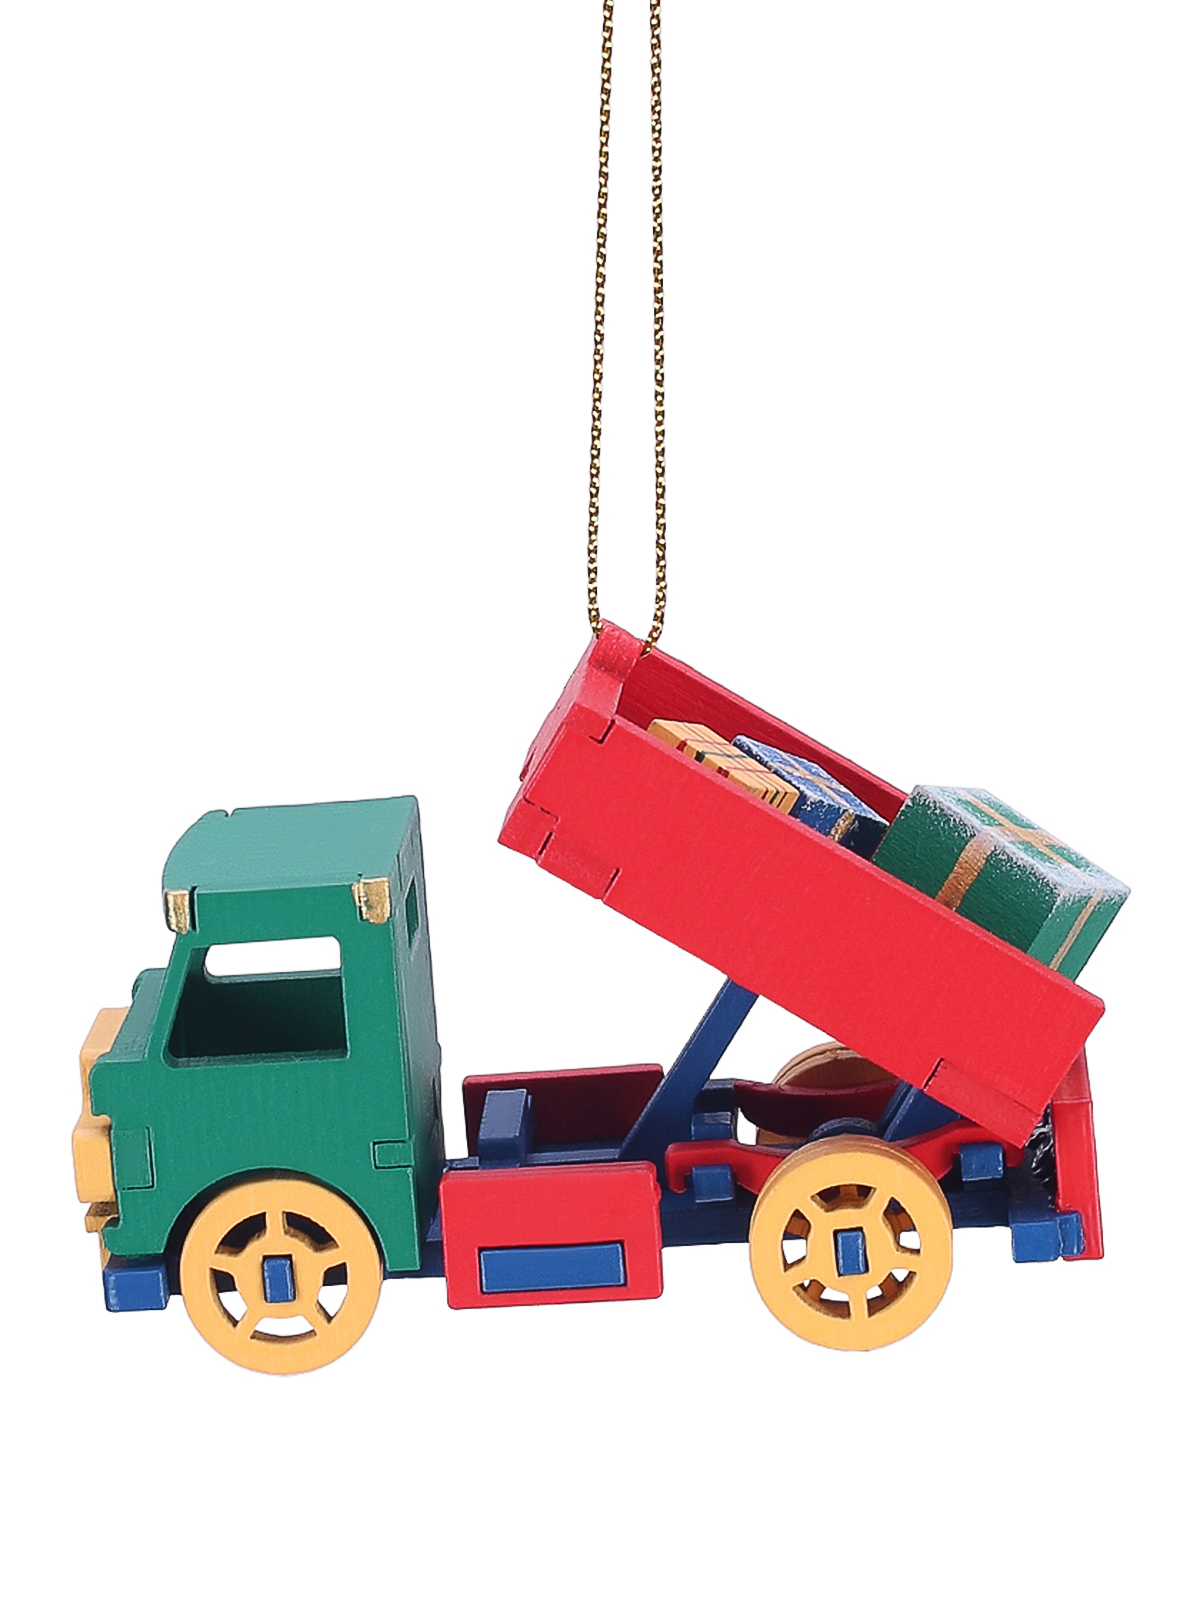 Елочная игрушка Машинка Wood-souvenirs Грузовичок 6029 T04733 1 шт. разноцветный